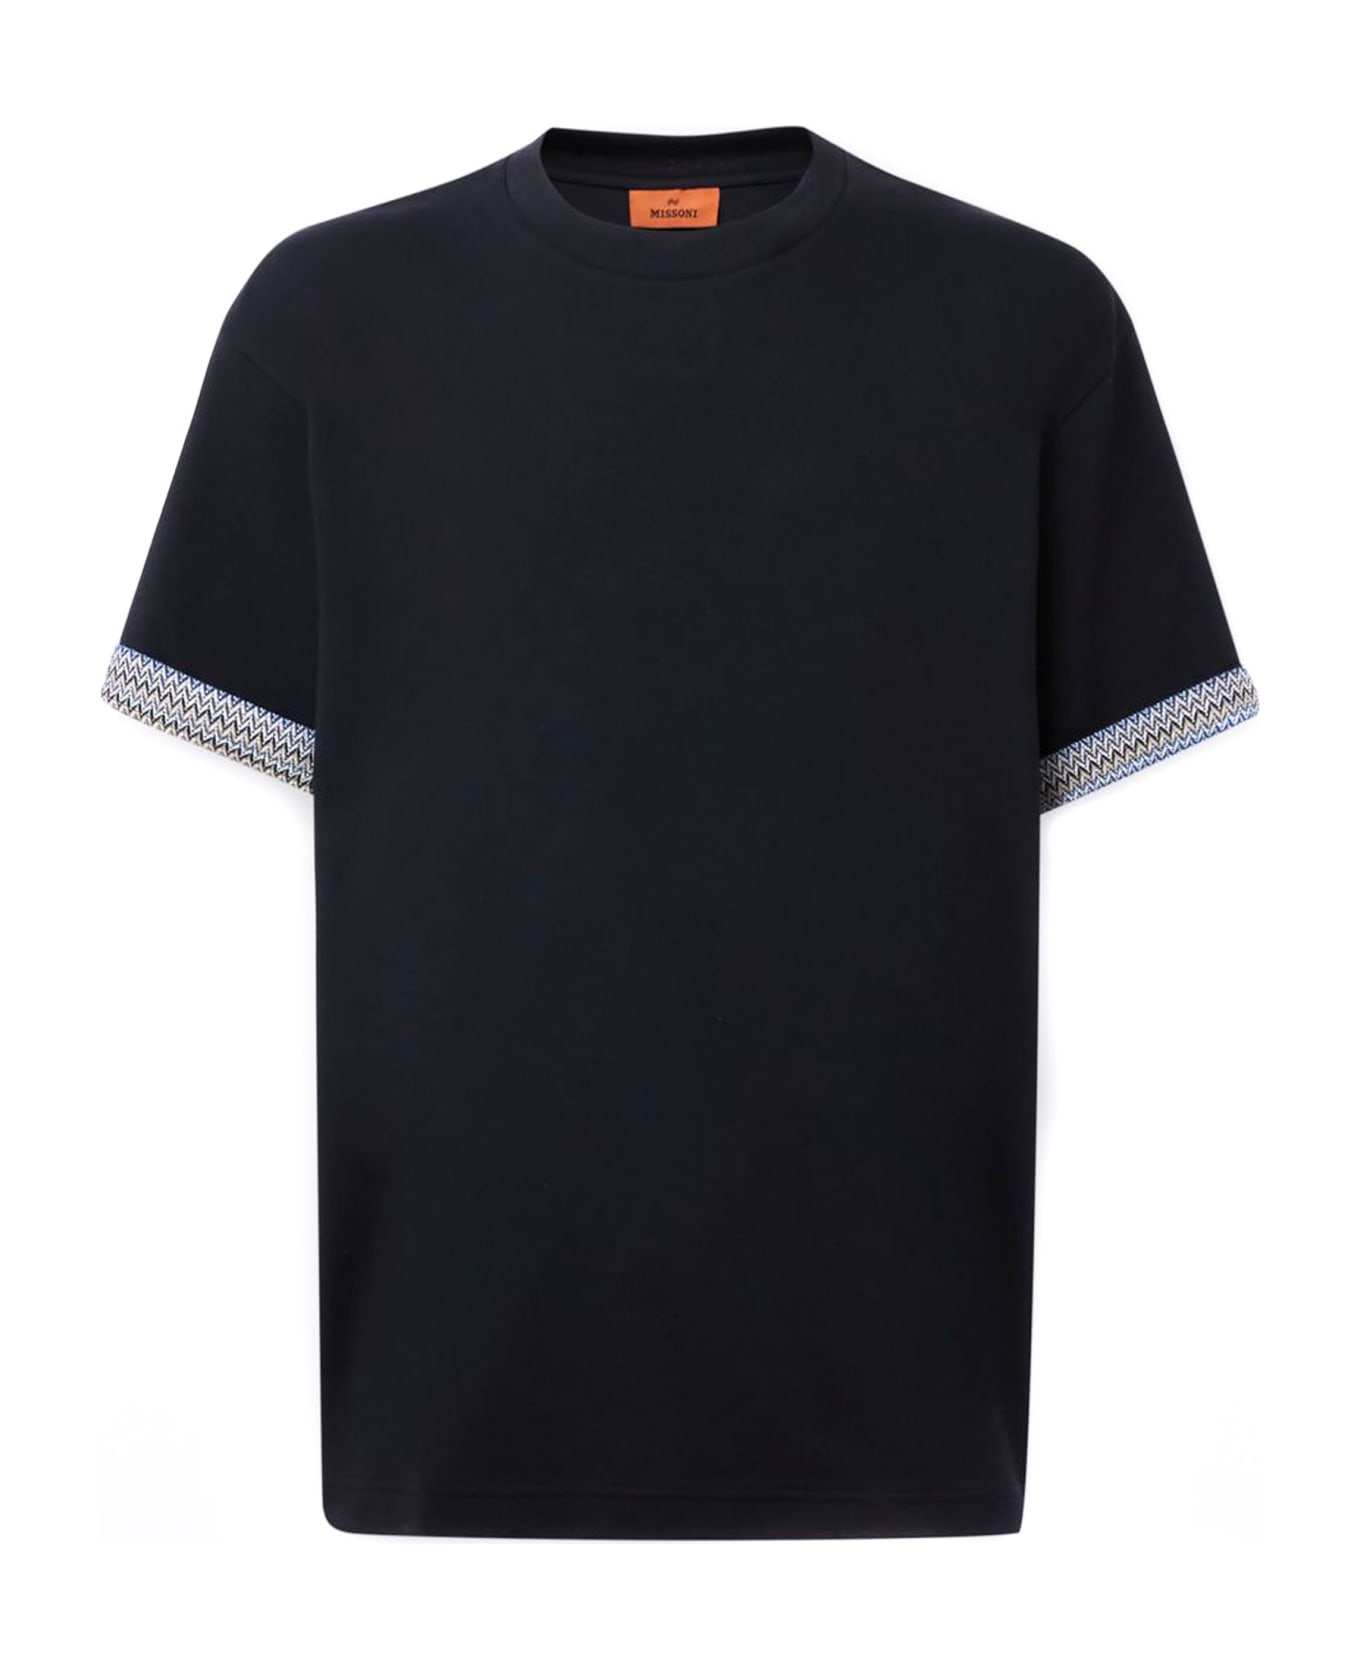 Missoni T-shirts And Polos Black - Black シャツ